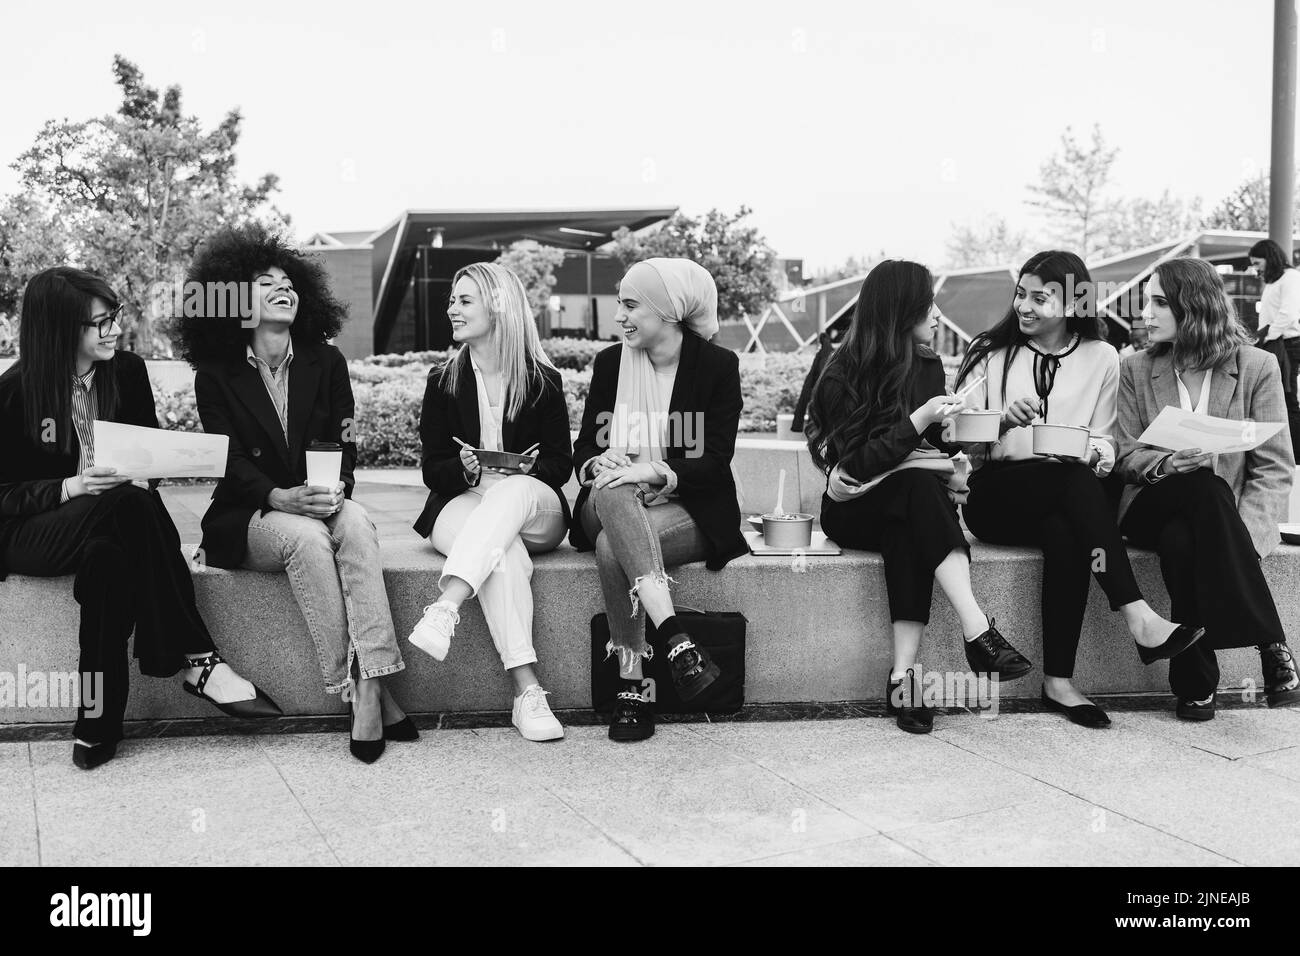 Multiethnische Geschäftsfrauen machen Mittagspause im Freien aus dem Bürogebäude - Fokus auf blondes Mädchengesicht - Schwarz-Weiß-Schnitt Stockfoto